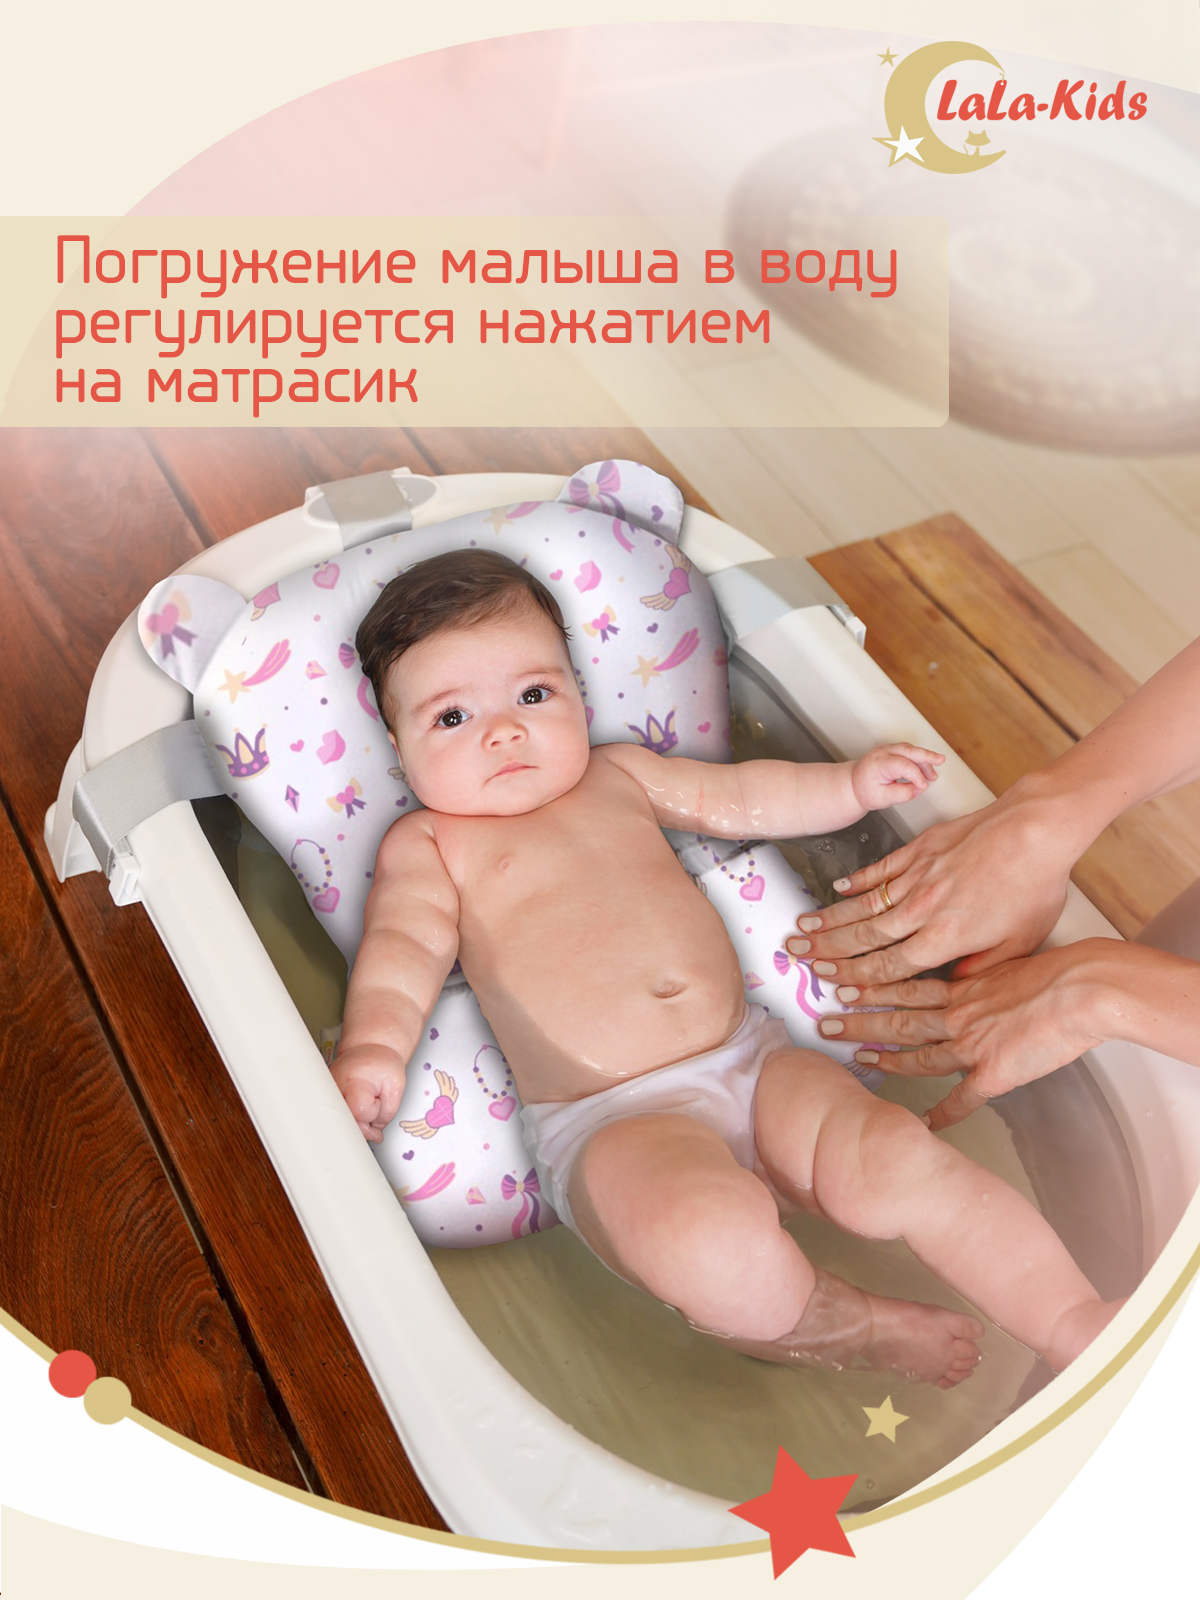 Детская ванночка с термометром LaLa-Kids складная с матрасиком персиковым в комплекте - фото 18